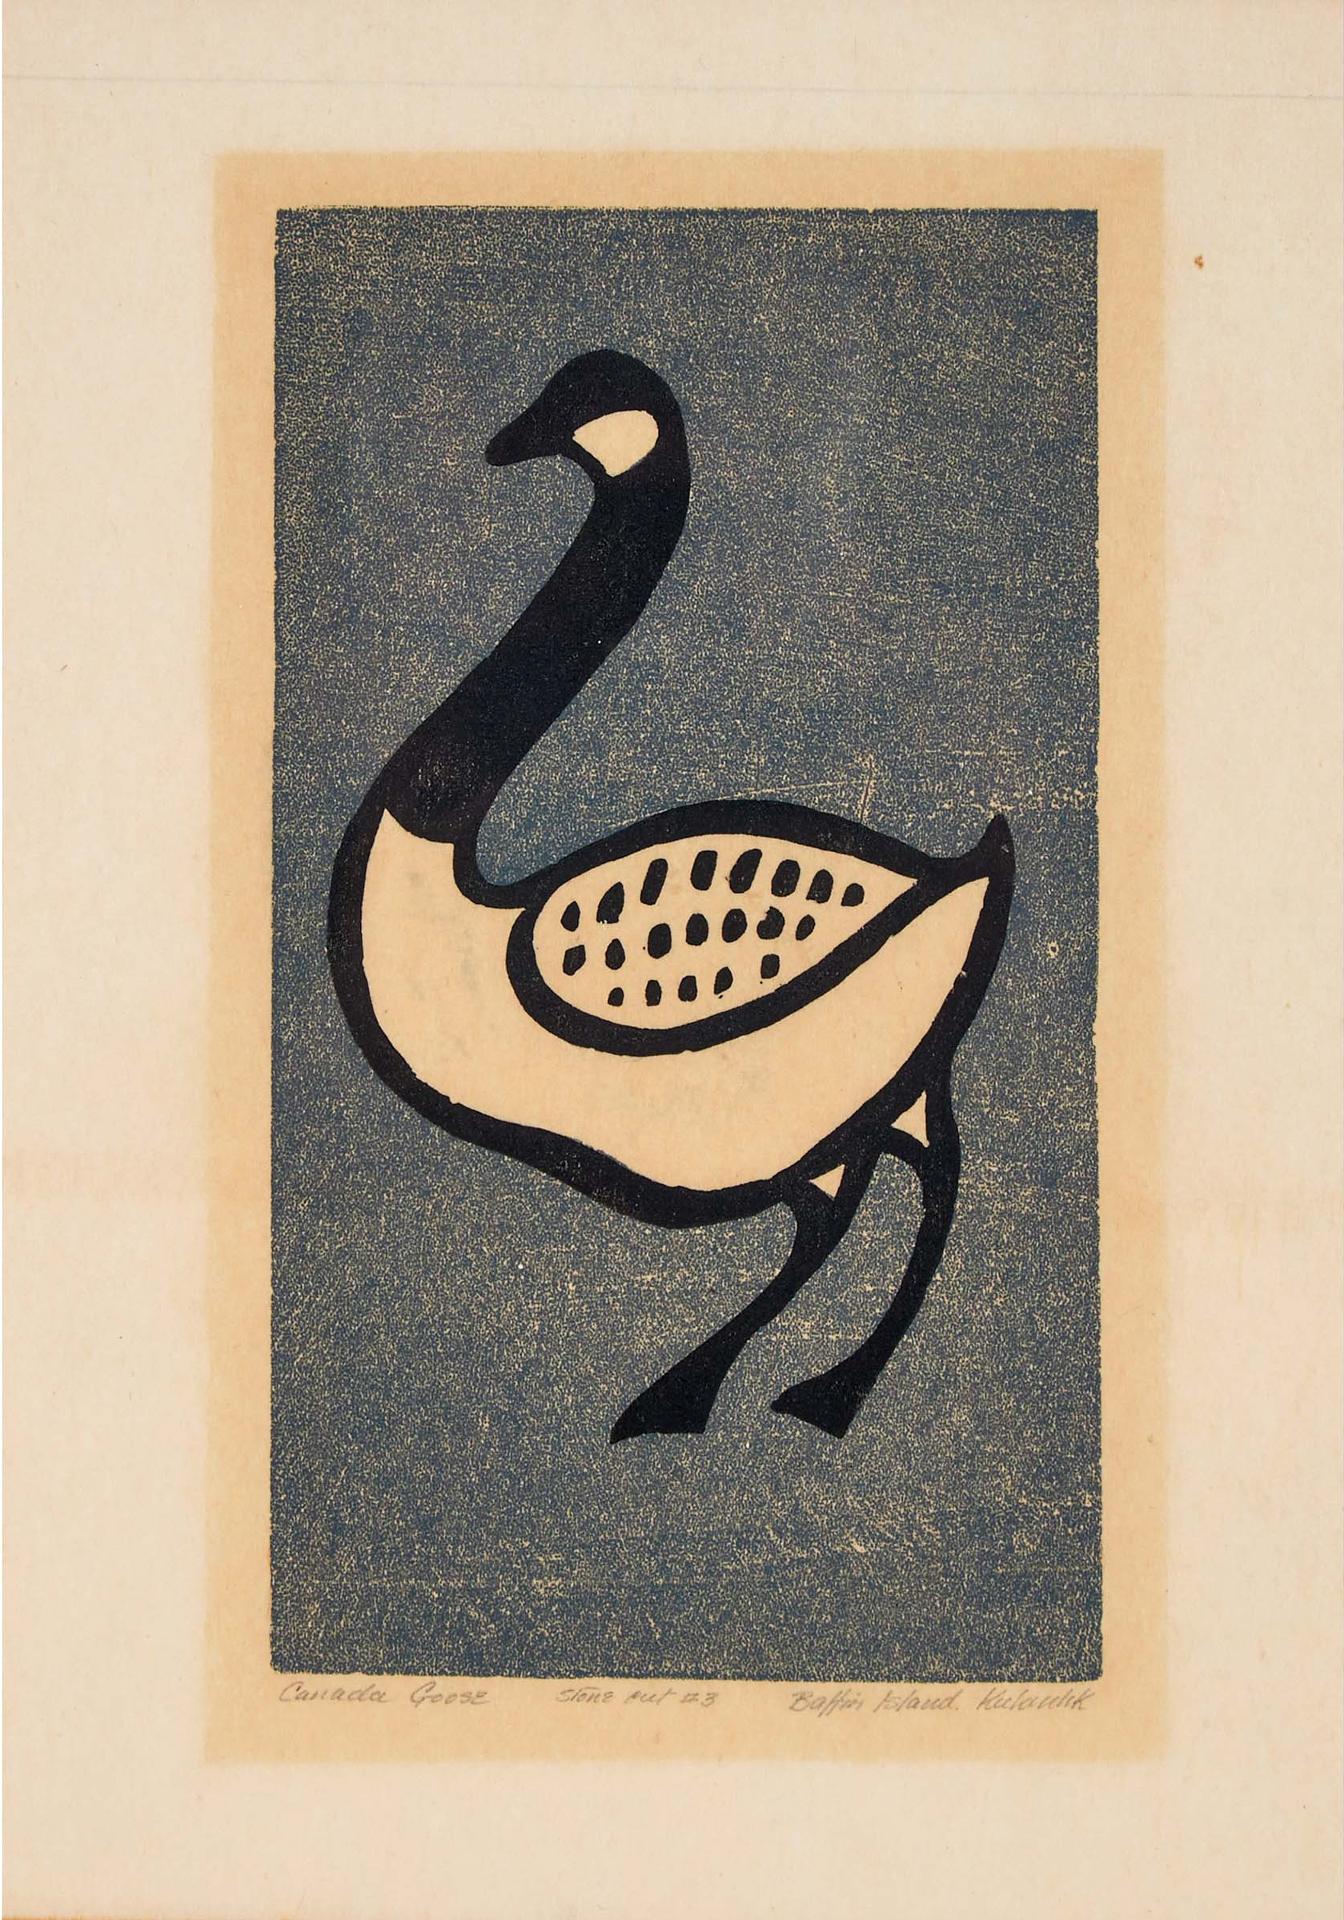 Kalingo Or Kudlalak Or Iyola Kingwatsiak (1933) - Canada Goose, 1957